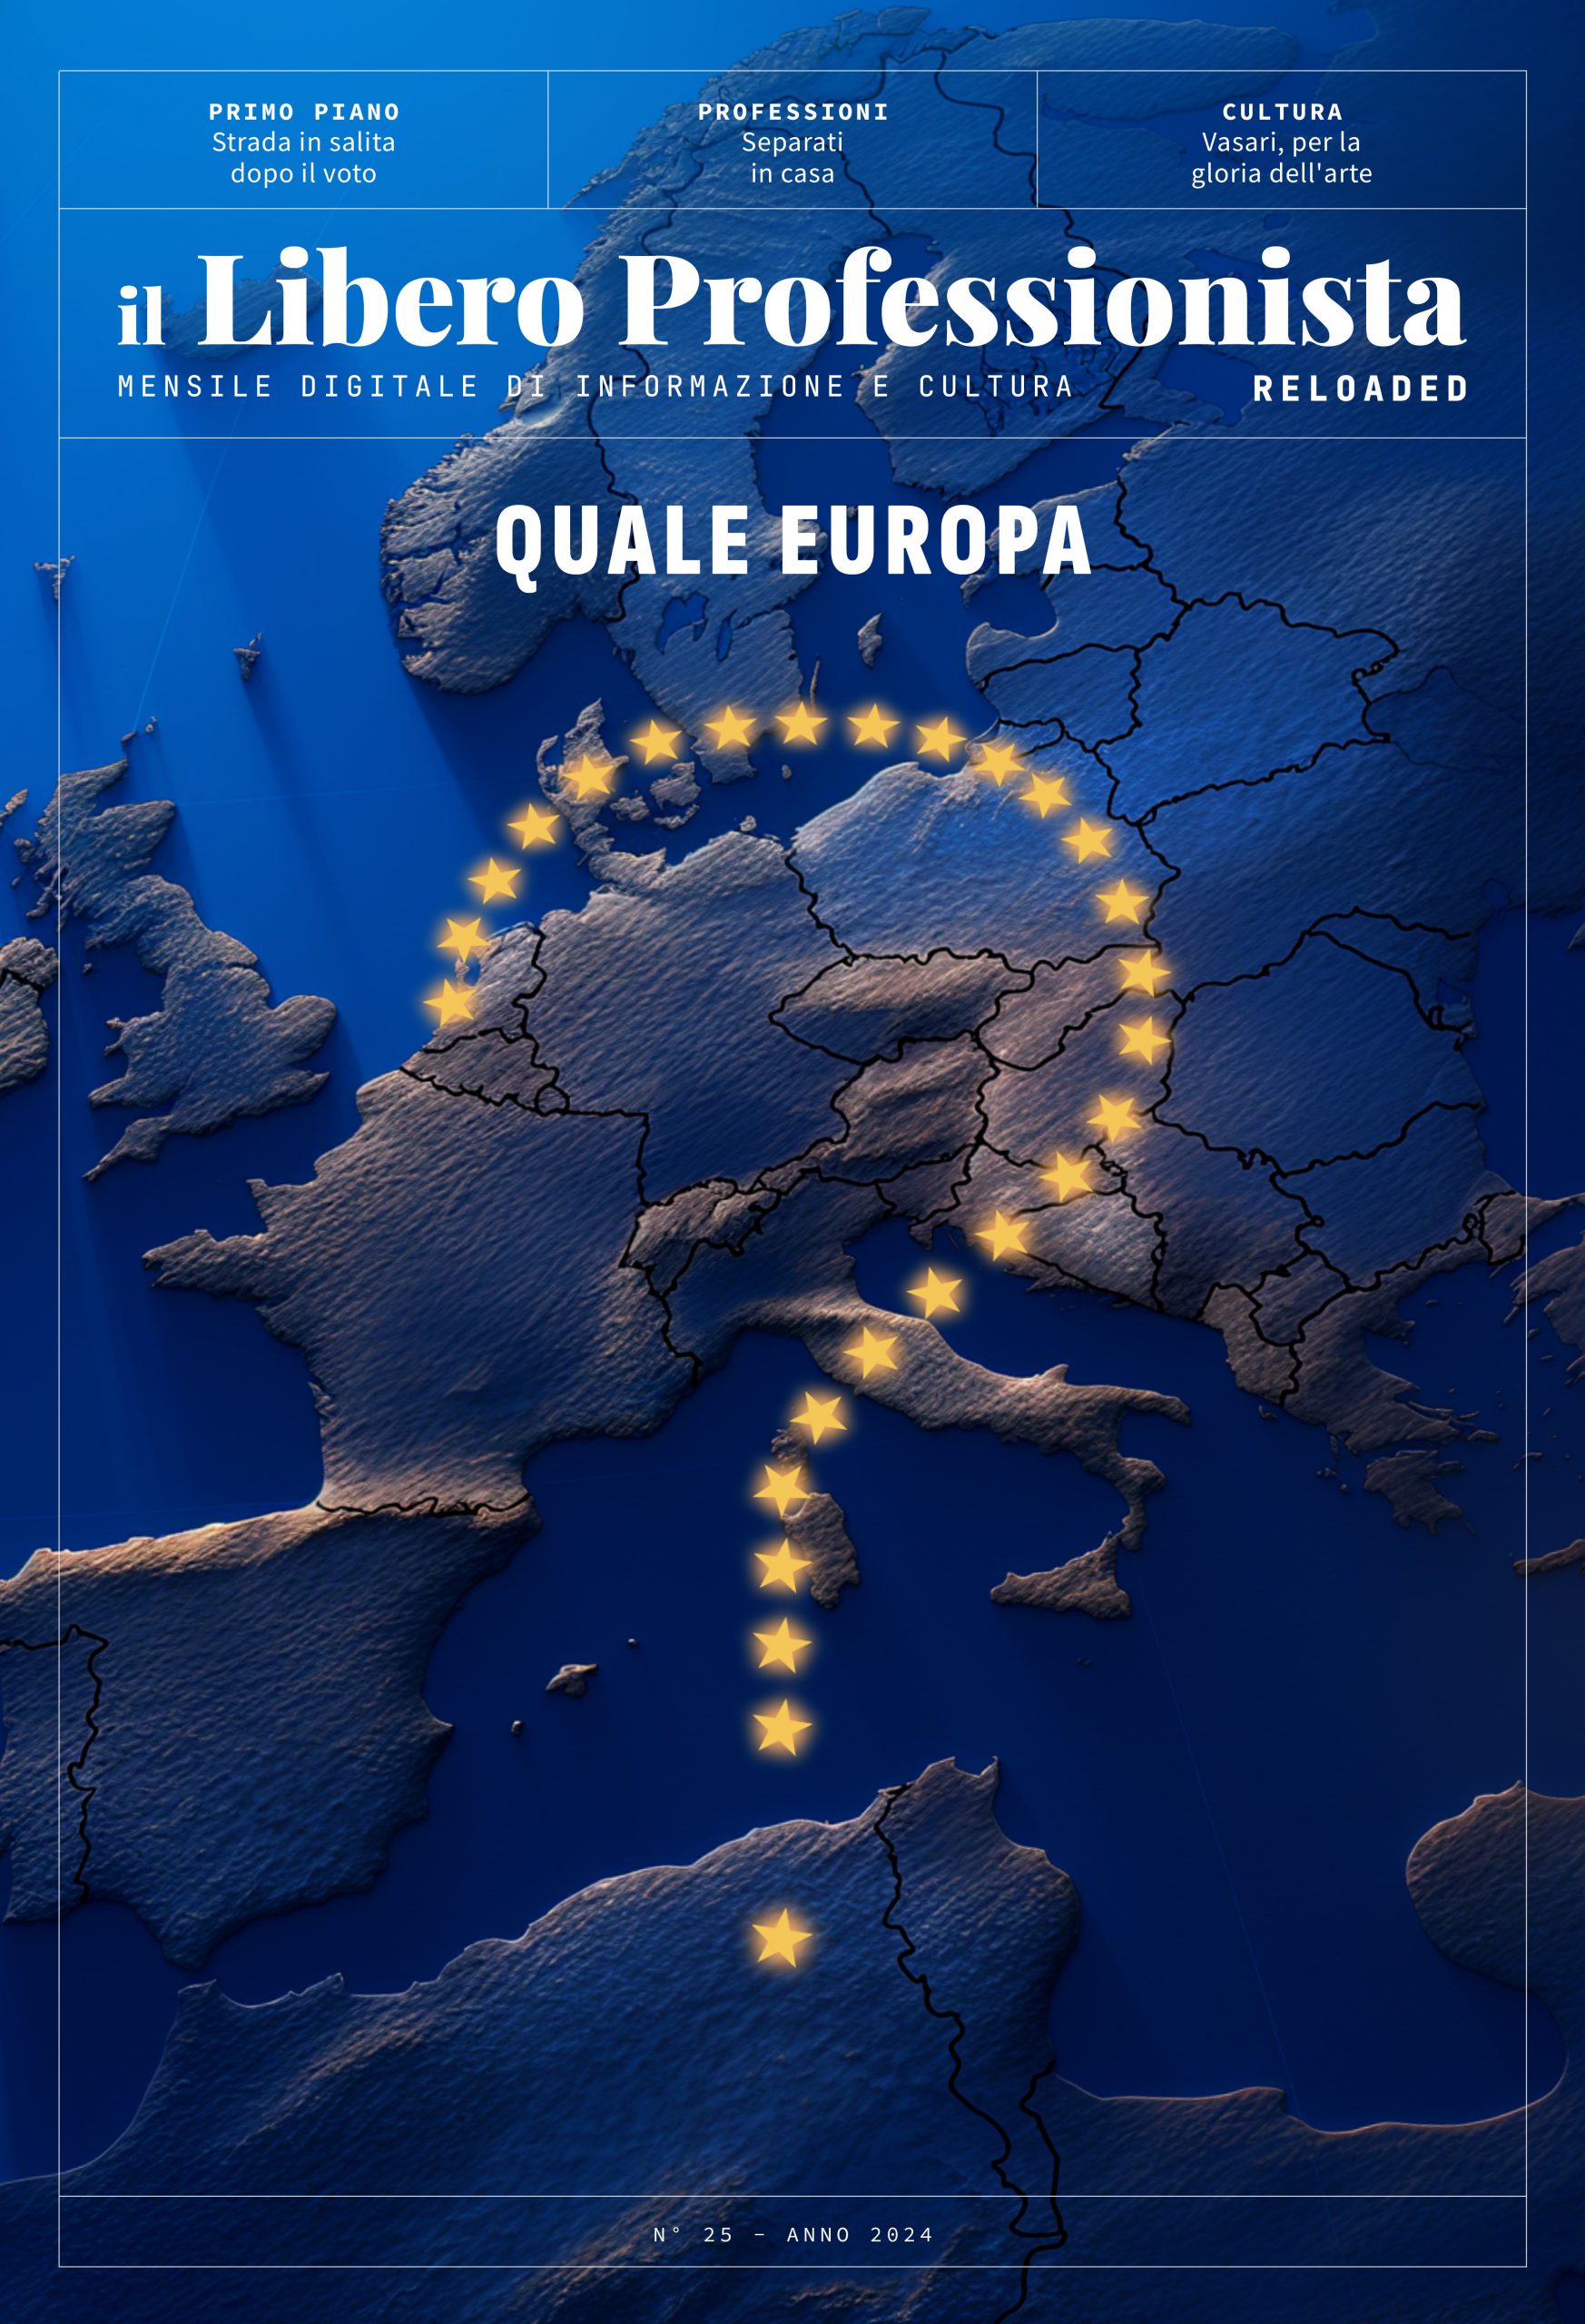 Il Libero Professionista Reloaded #25: Quale Europa?